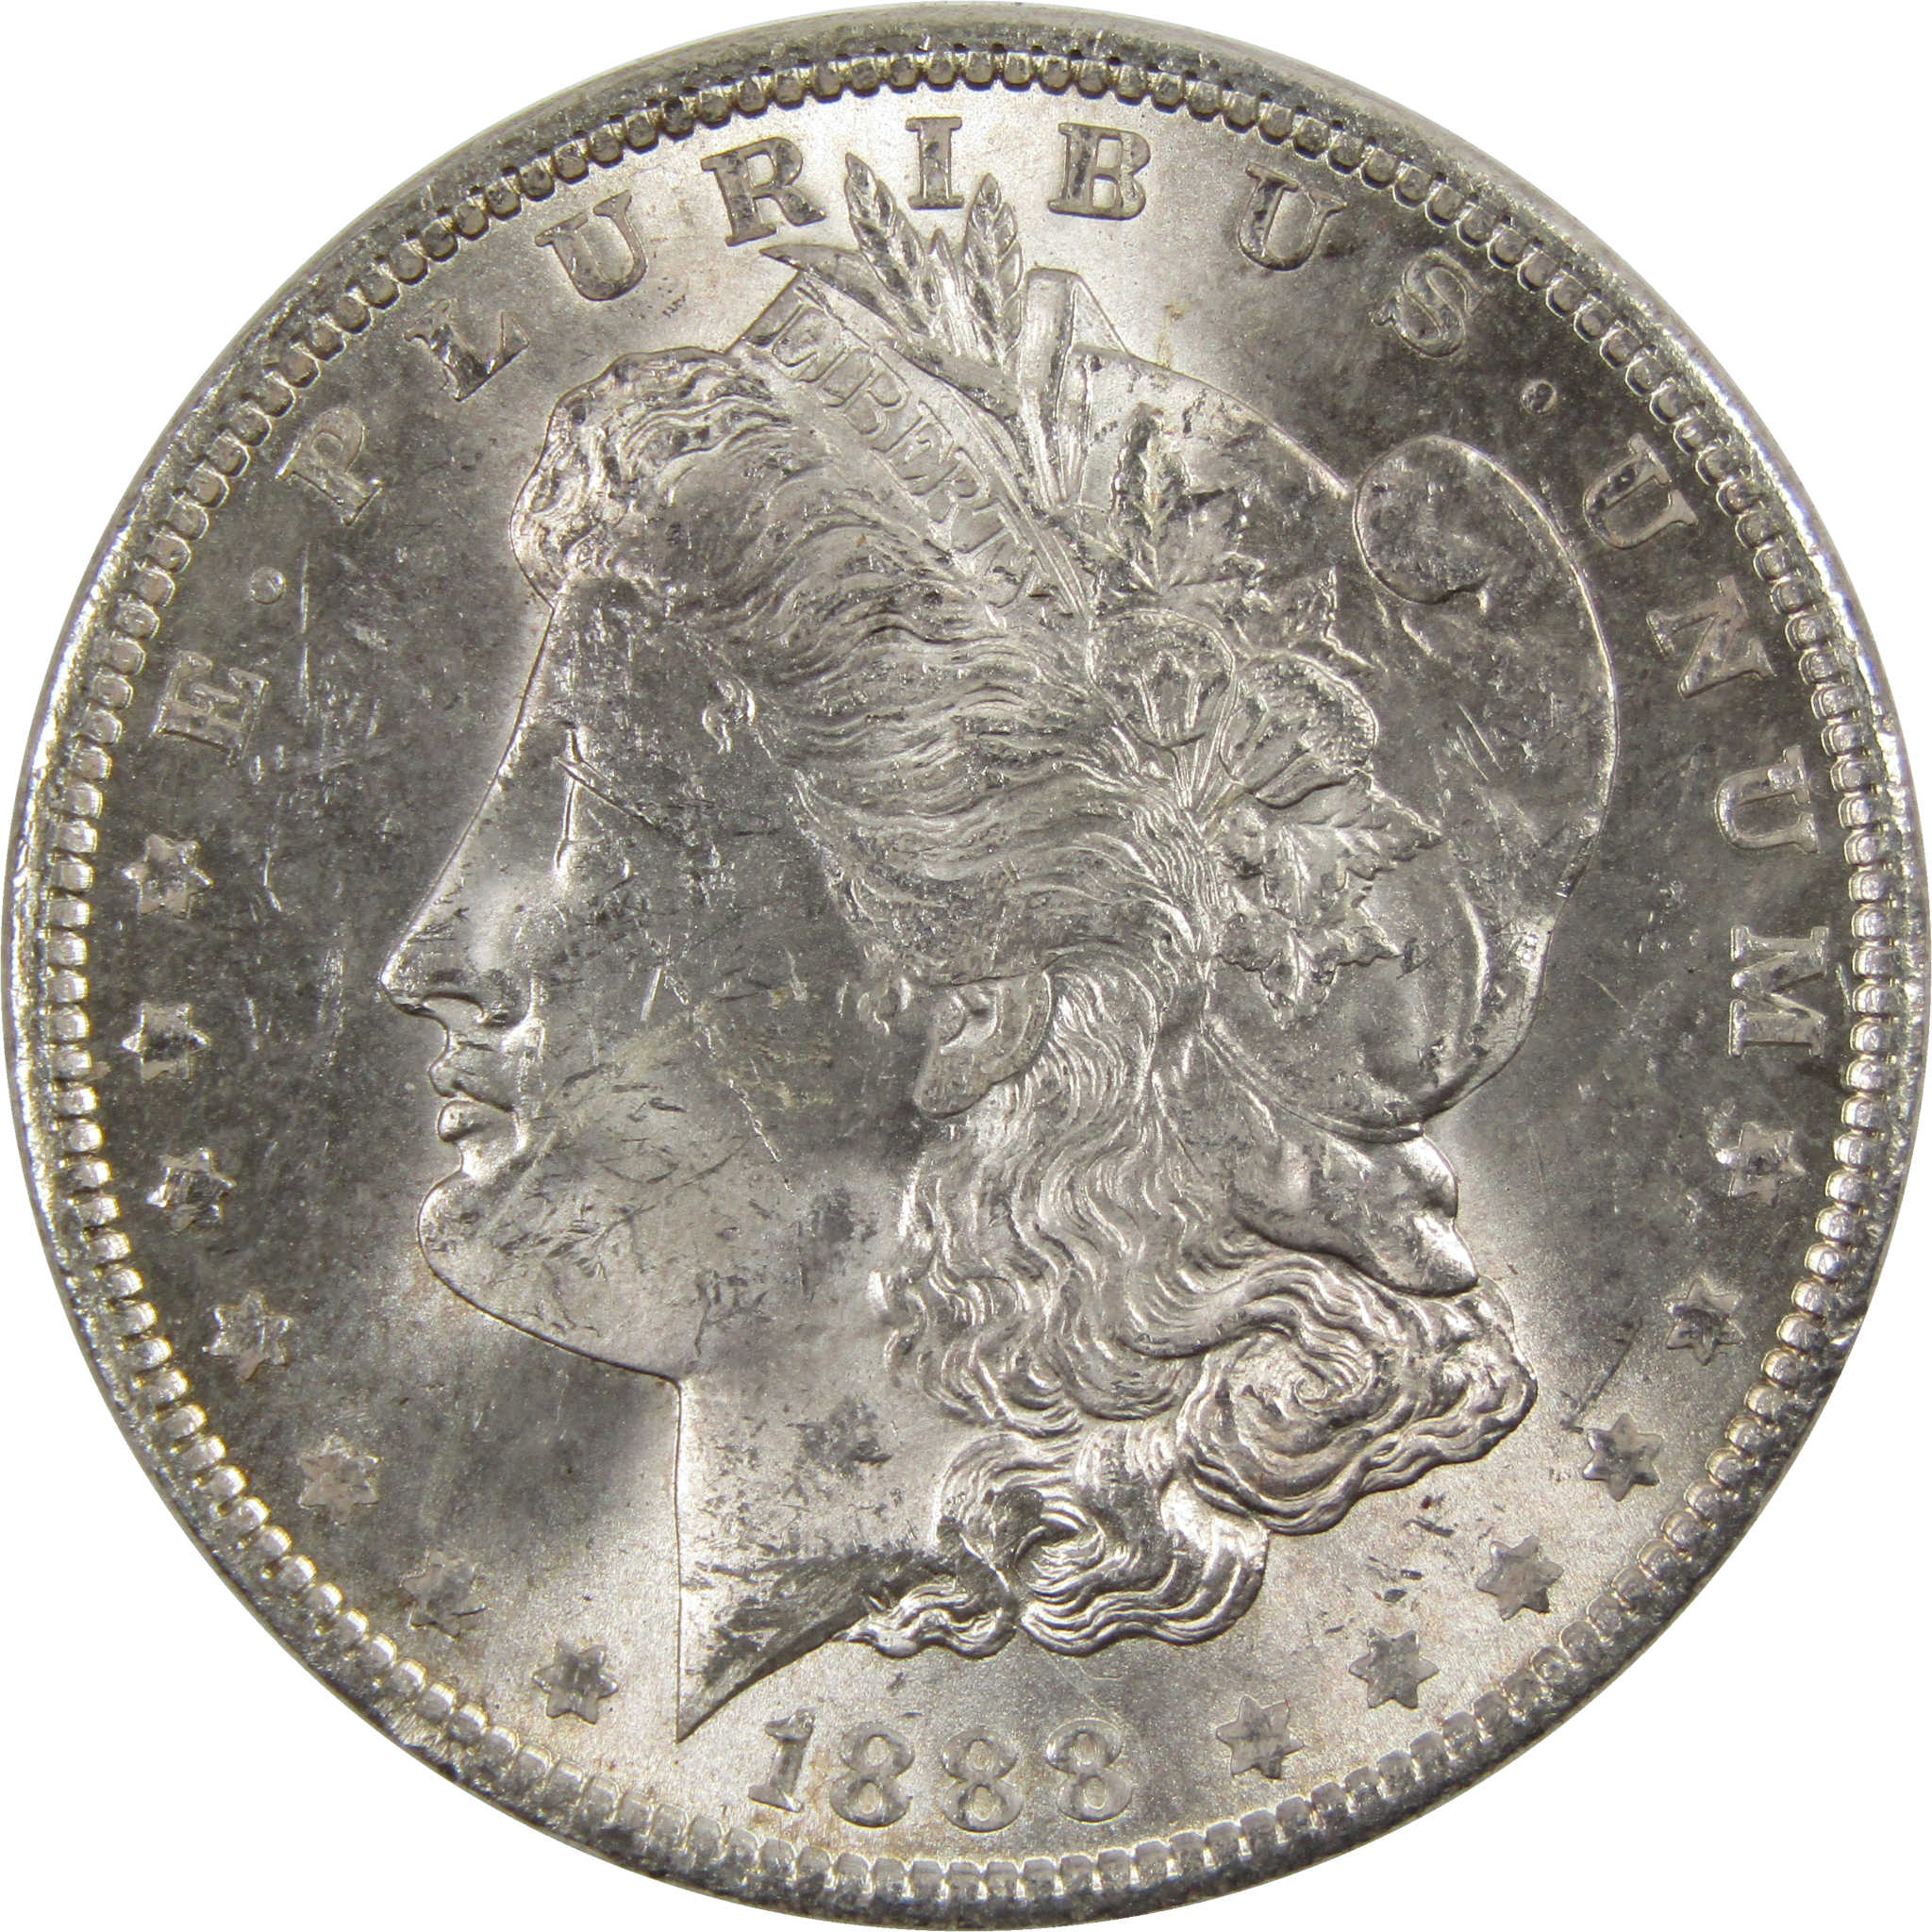 1888 Morgan Dollar BU Uncirculated 90% Silver $1 Coin SKU:I6036 - Morgan coin - Morgan silver dollar - Morgan silver dollar for sale - Profile Coins &amp; Collectibles